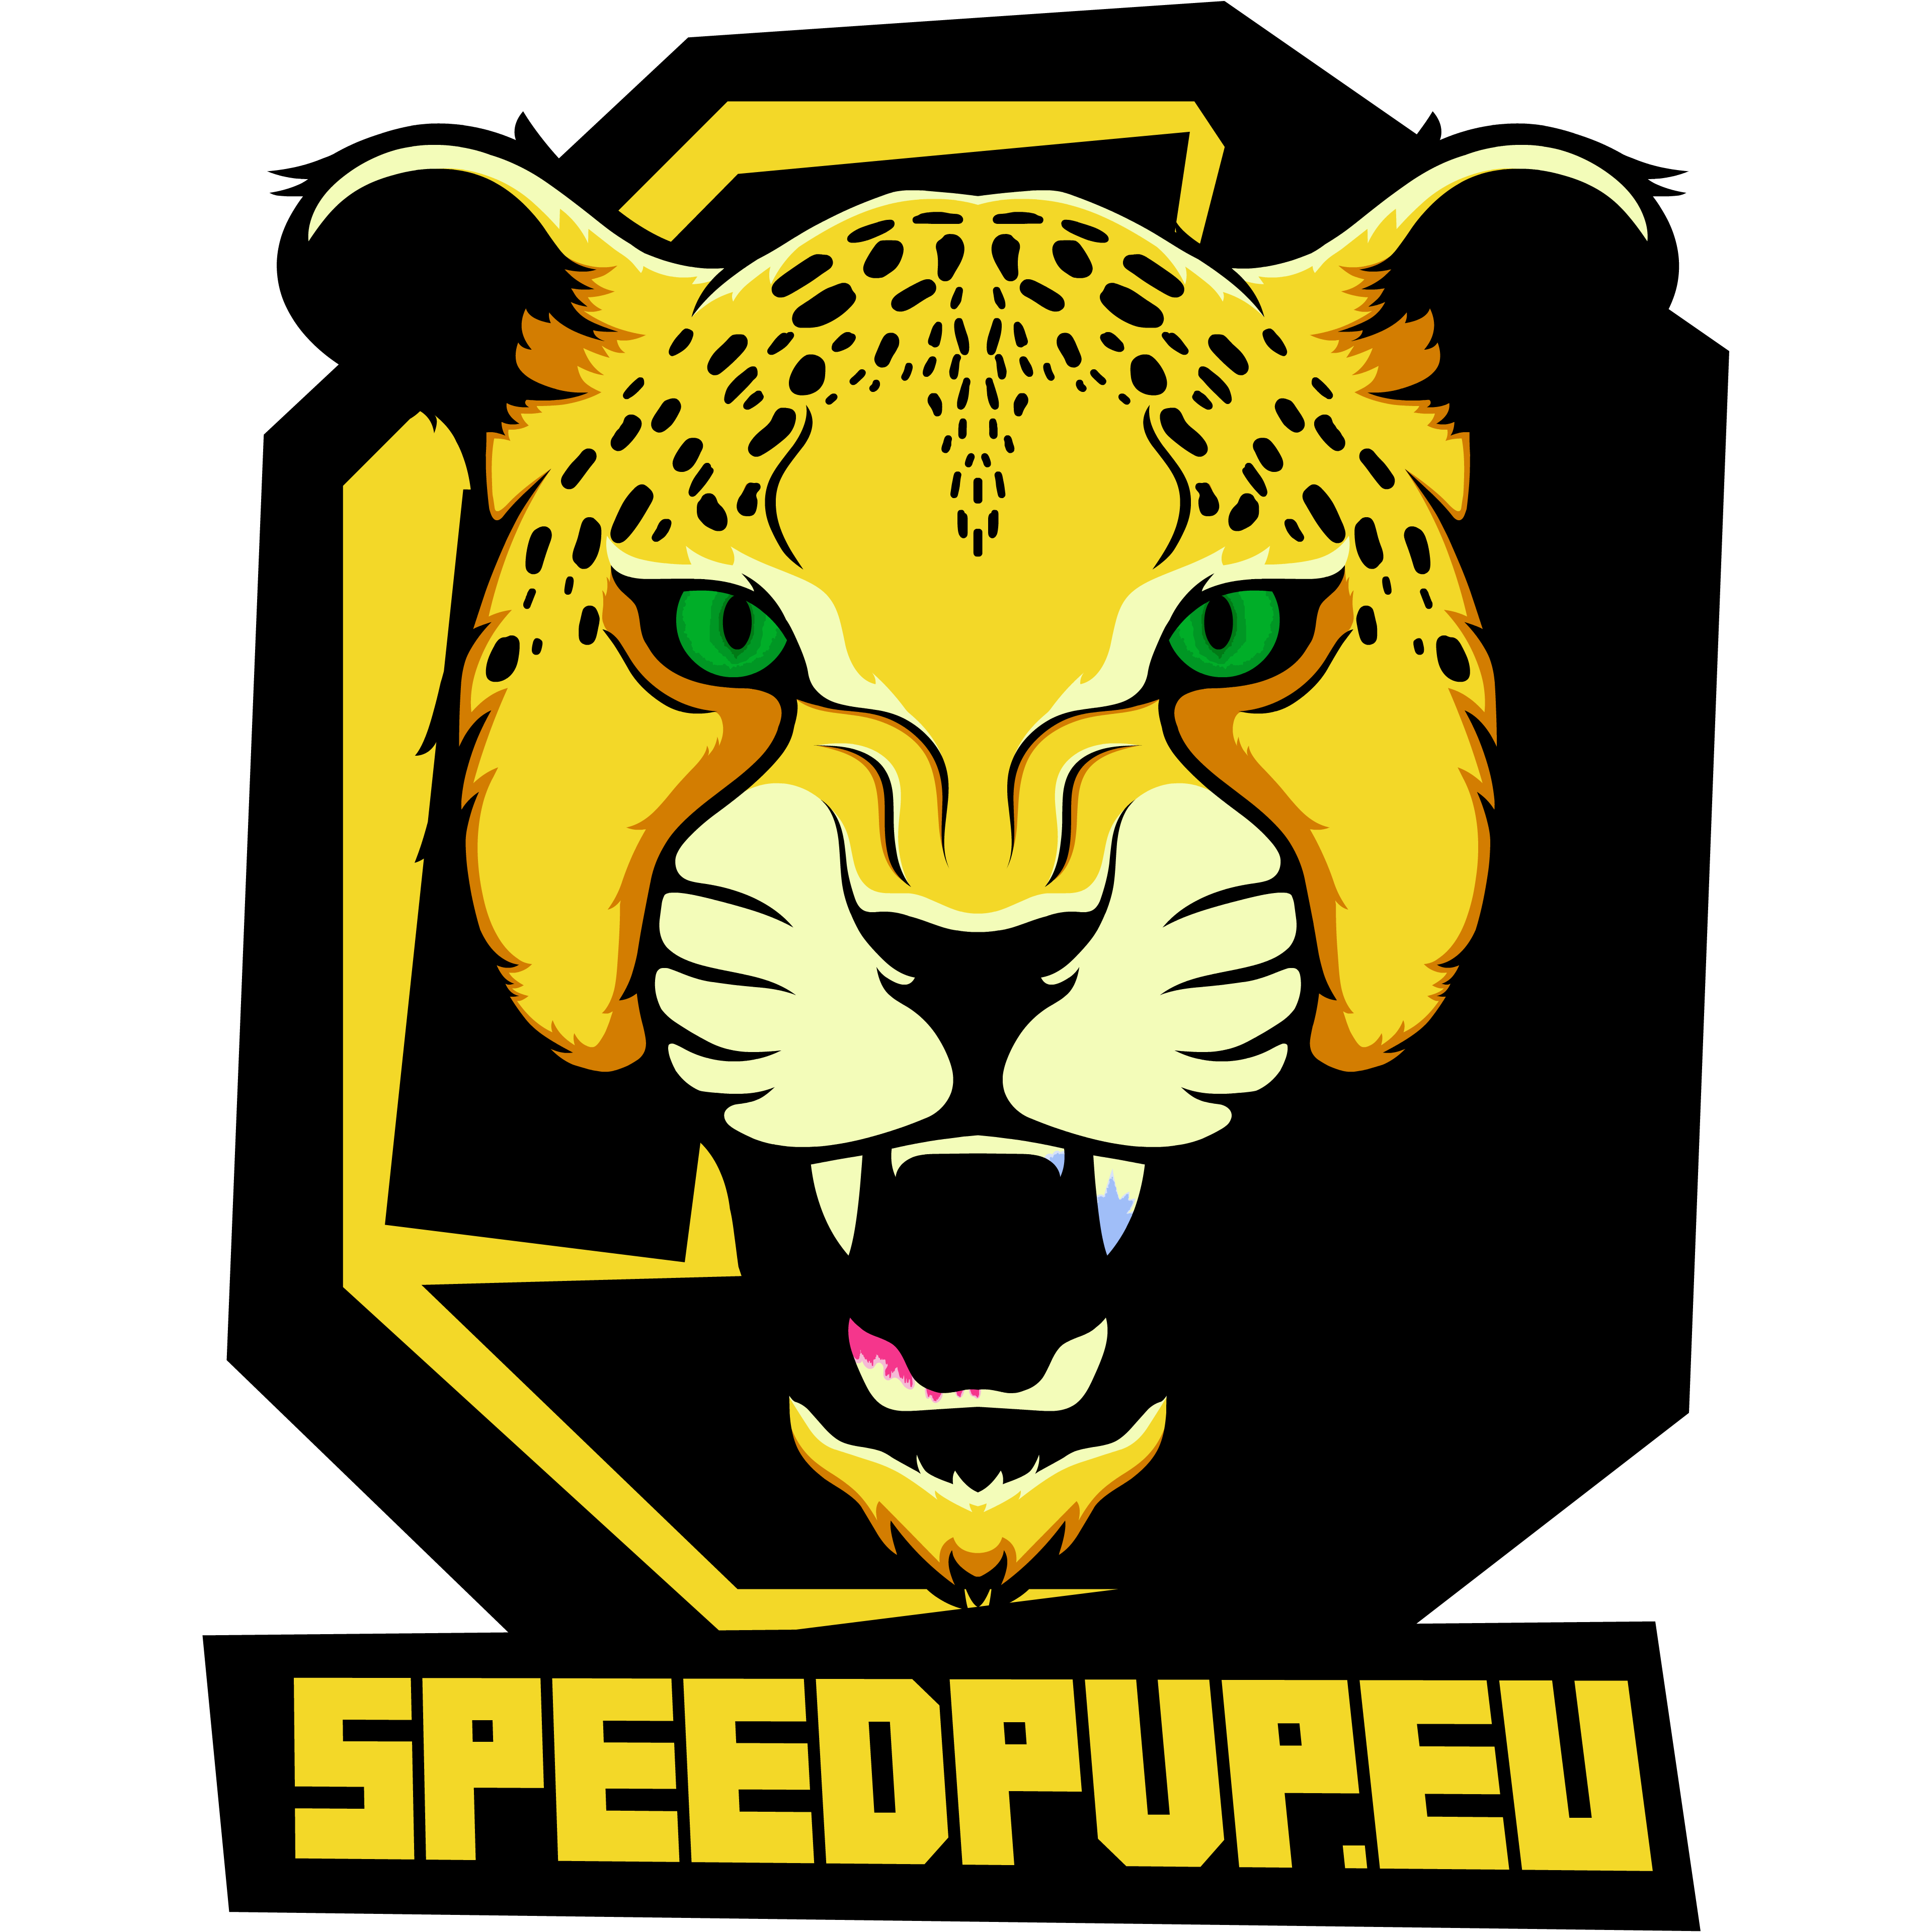 Speedpvp.eu logo